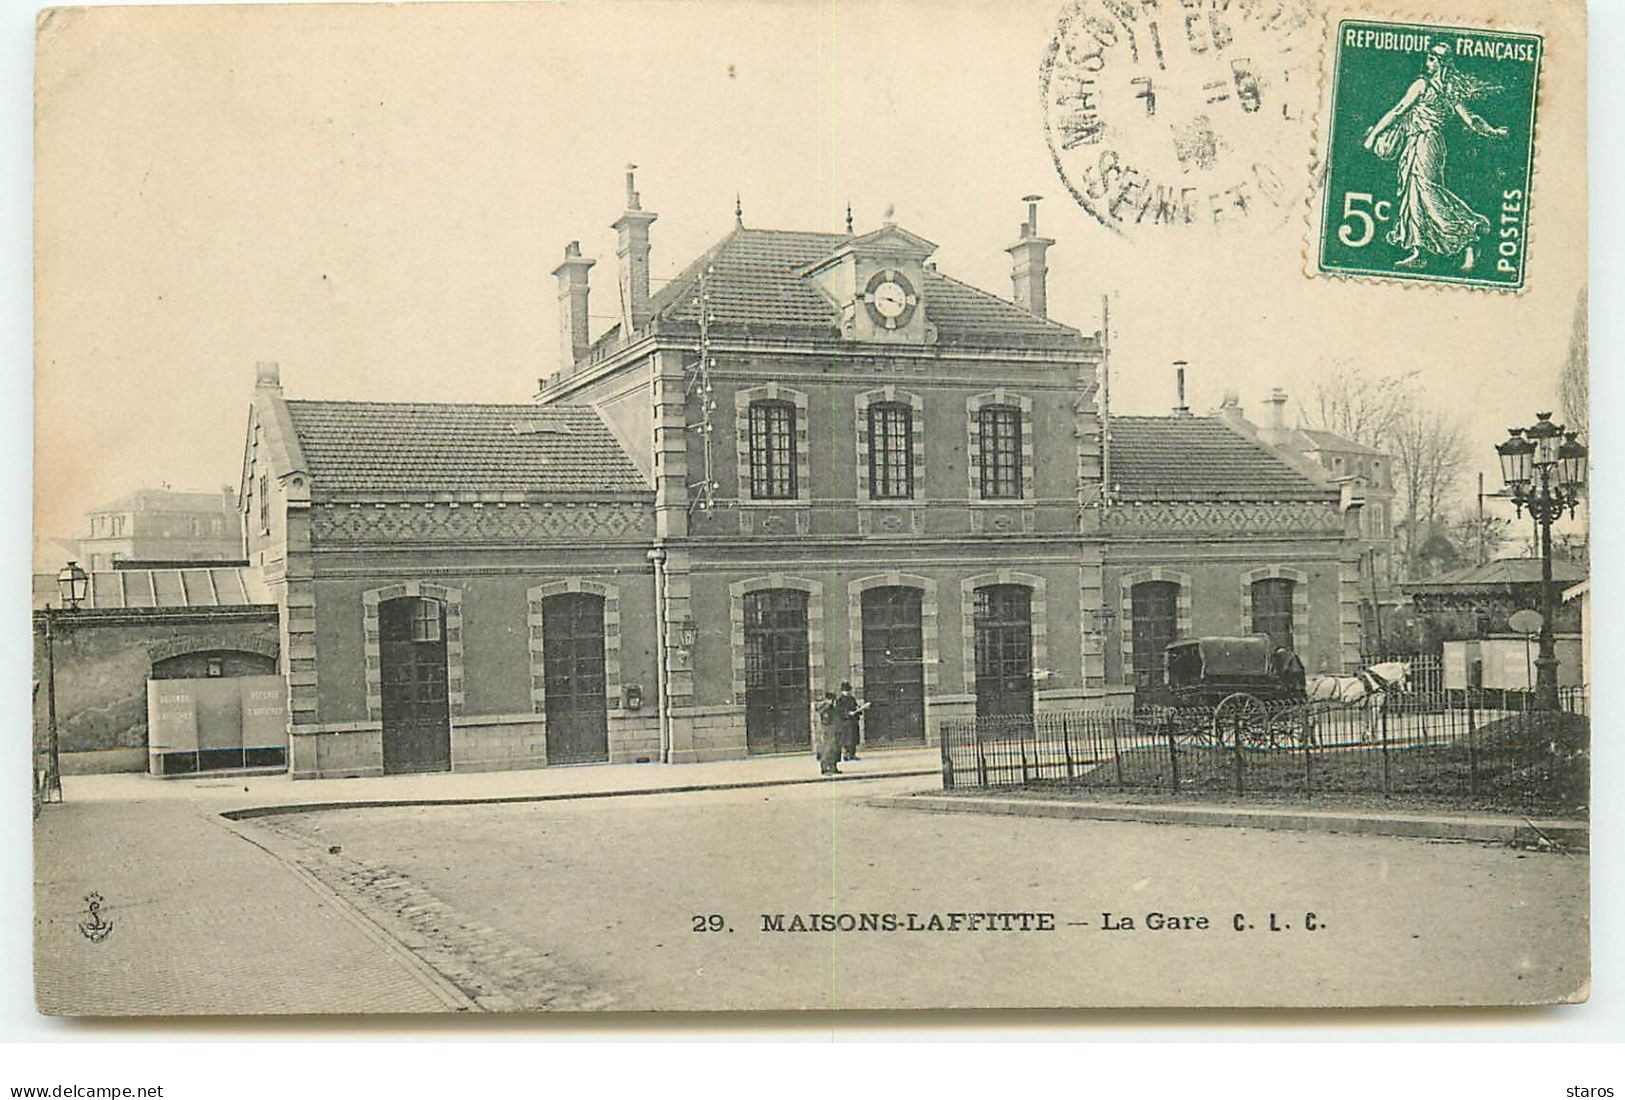 MAISONS-LAFFITTE - La Gare - CLC N°29 - Maisons-Laffitte